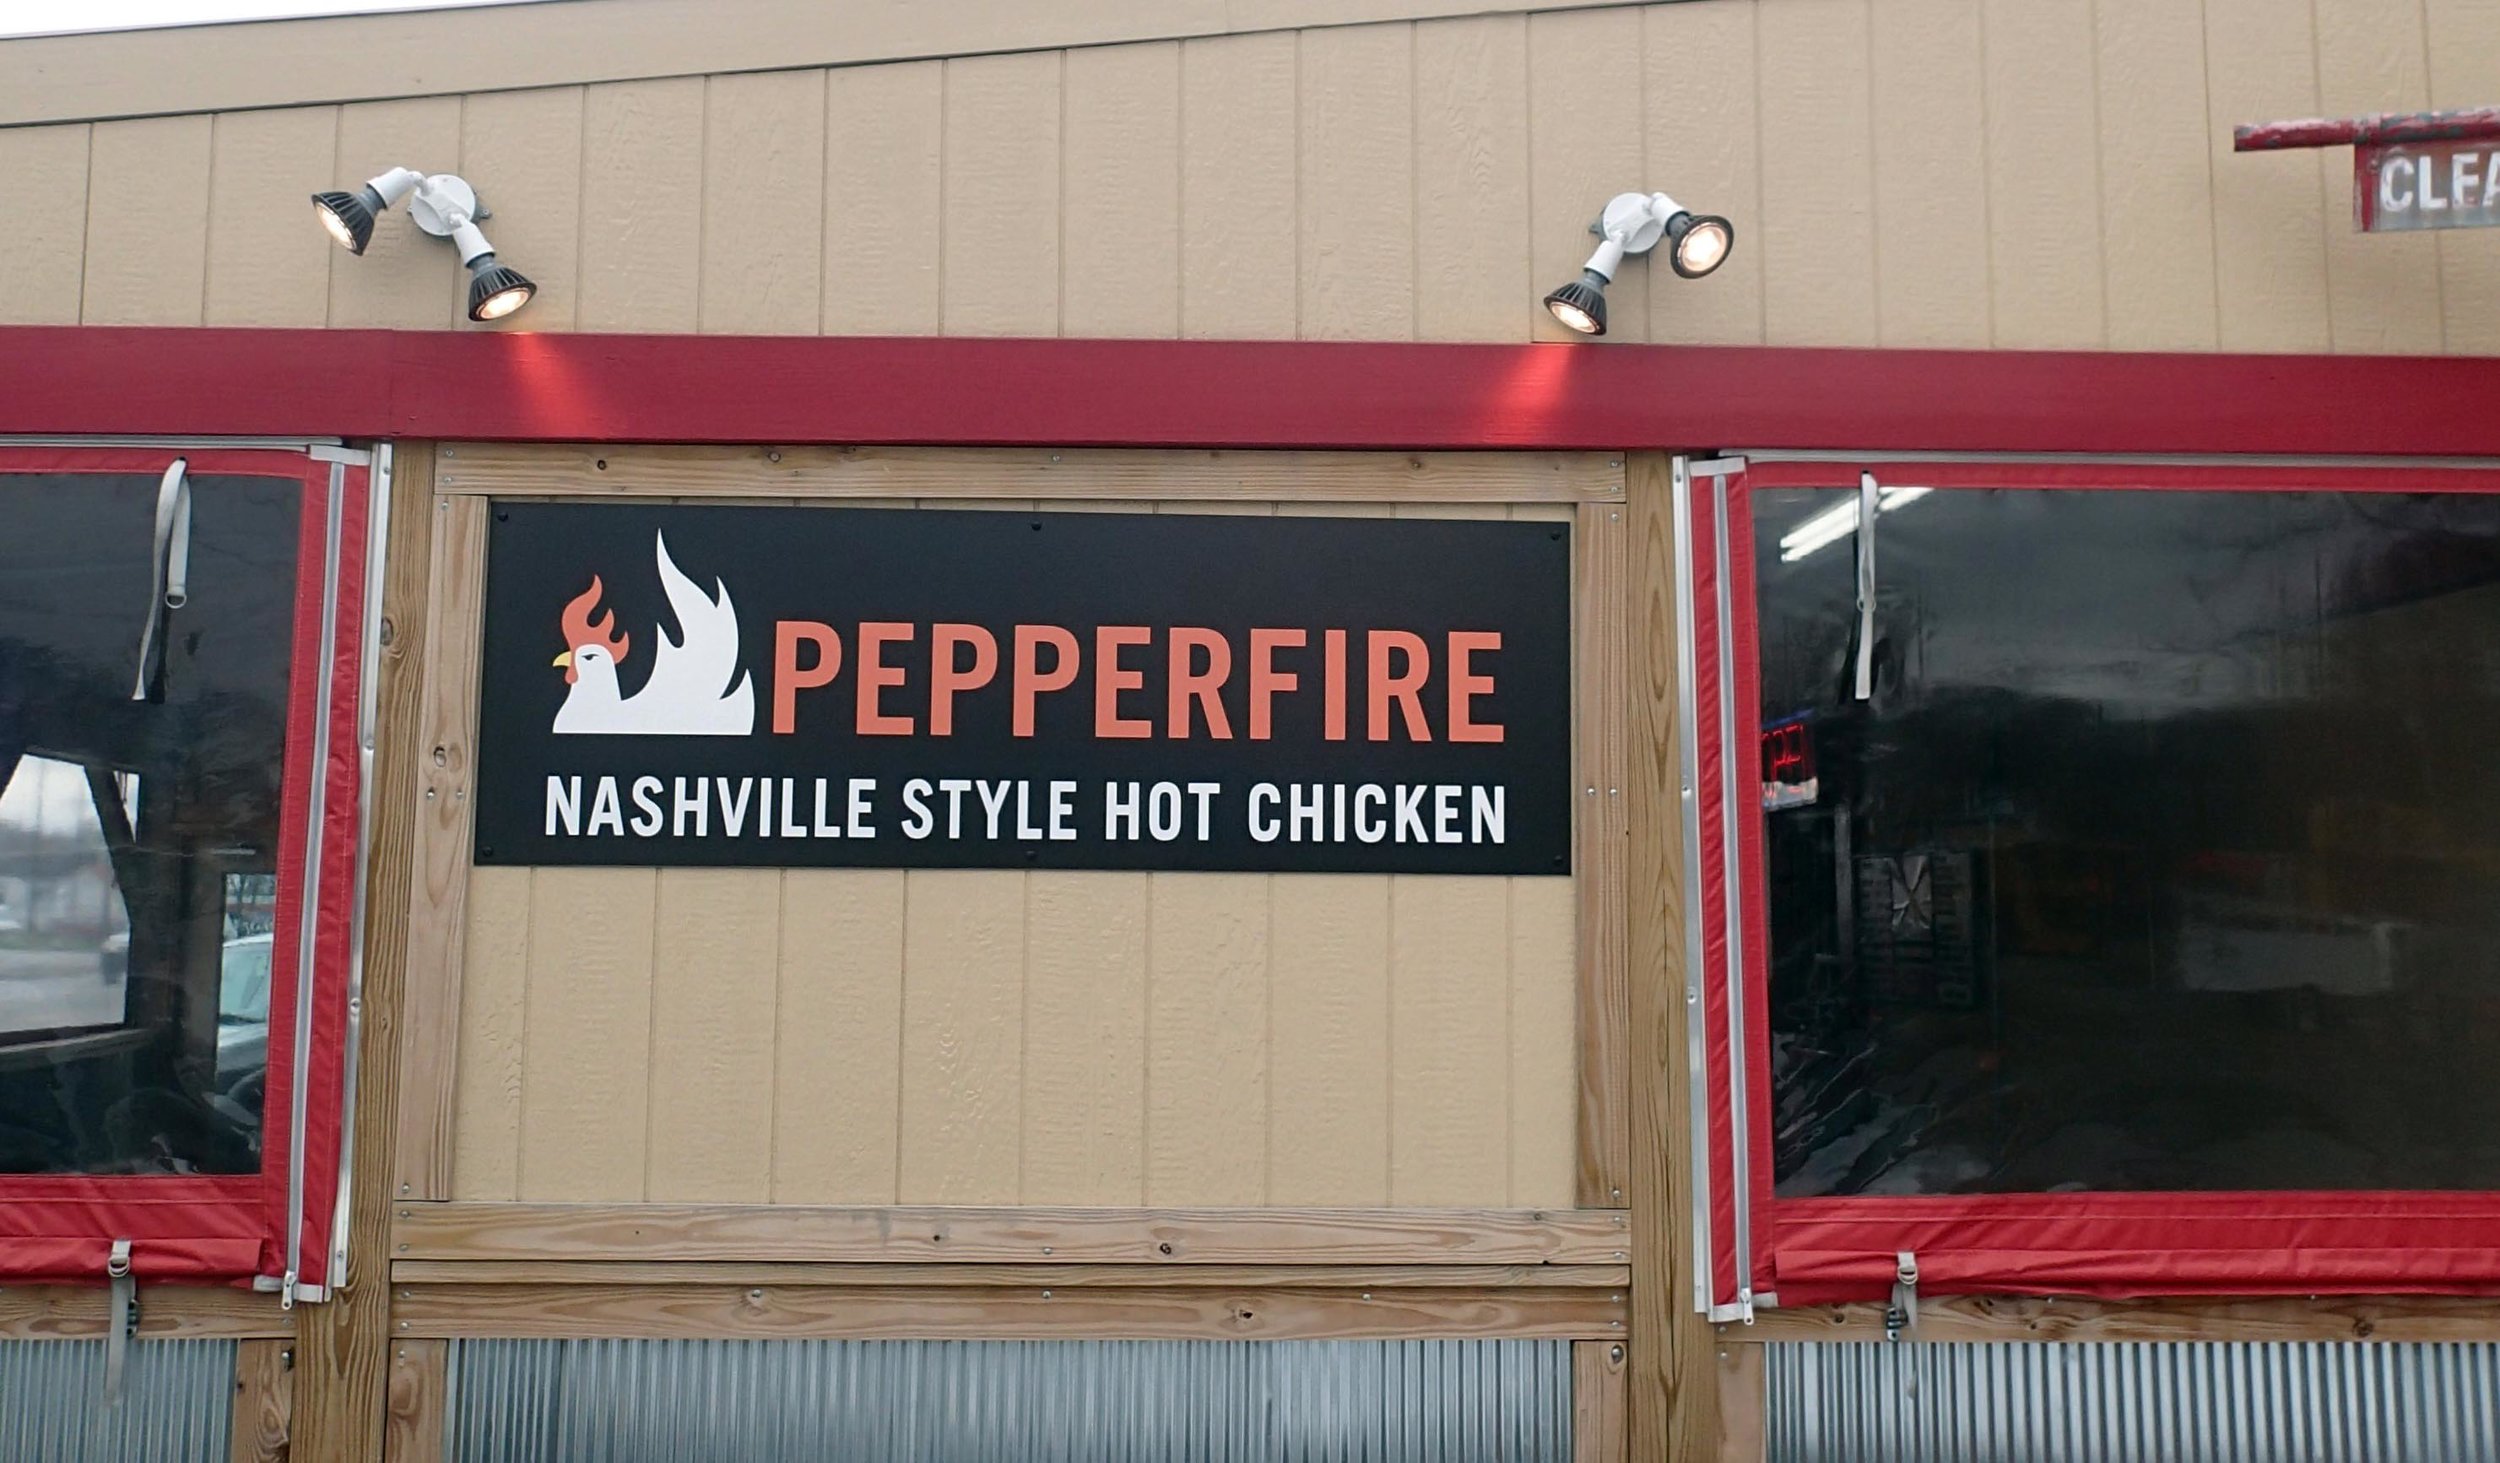 Pepperfire hot chicken 3-28-14.jpg